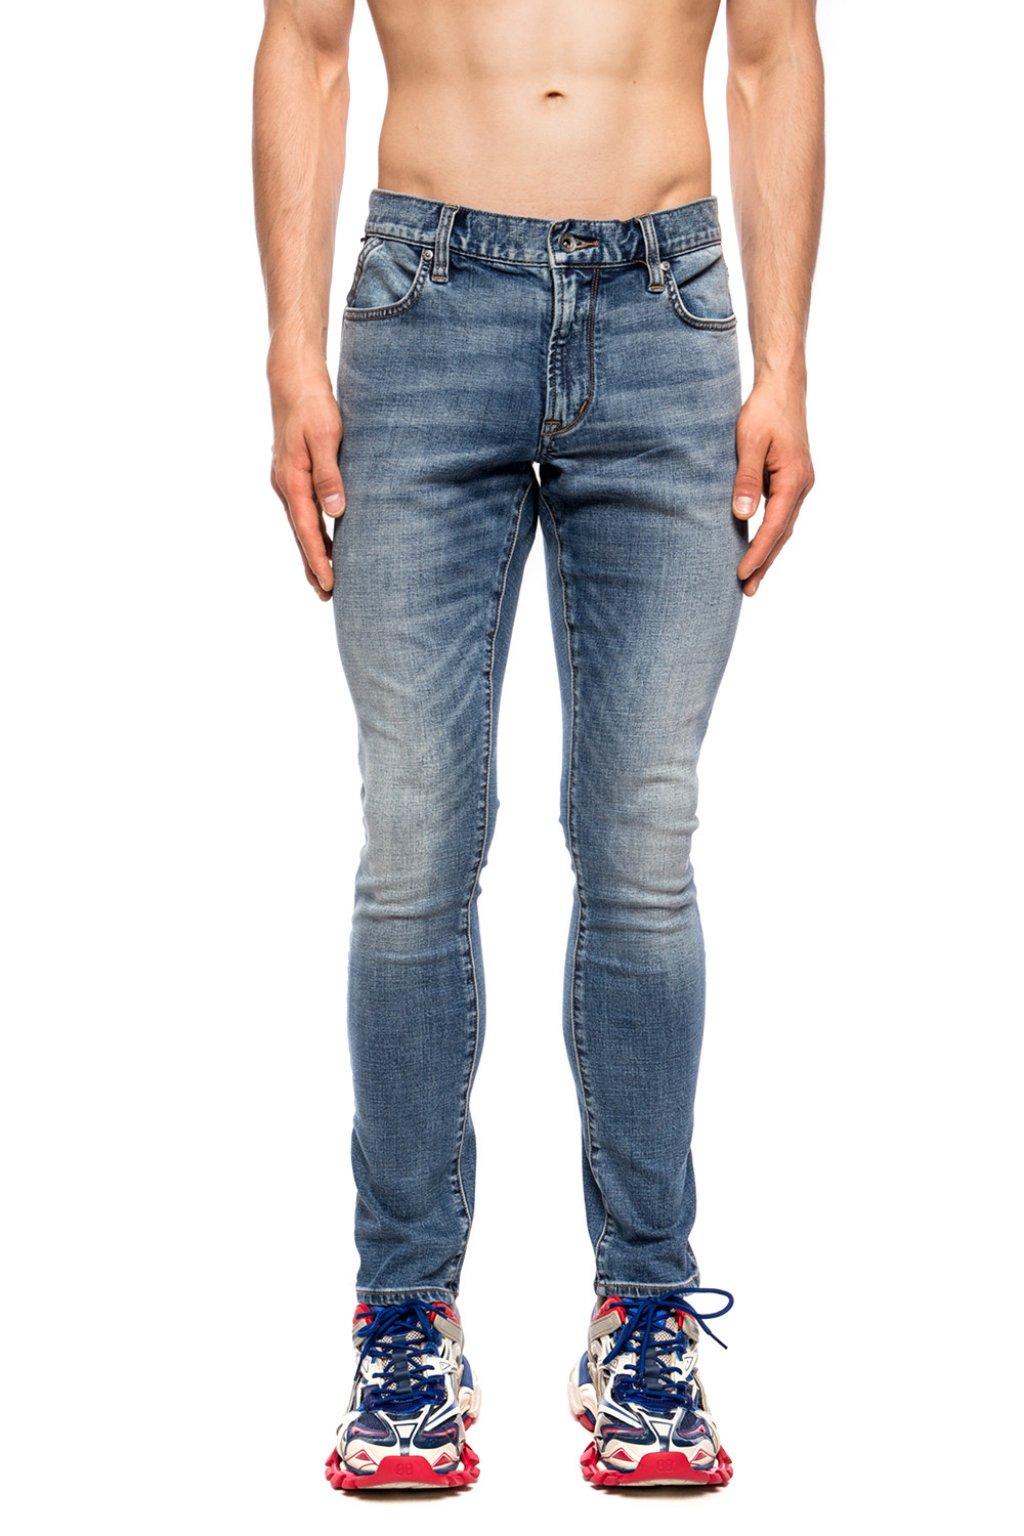 John Varvatos Denim Stonewashed Jeans in Blue for Men - Lyst